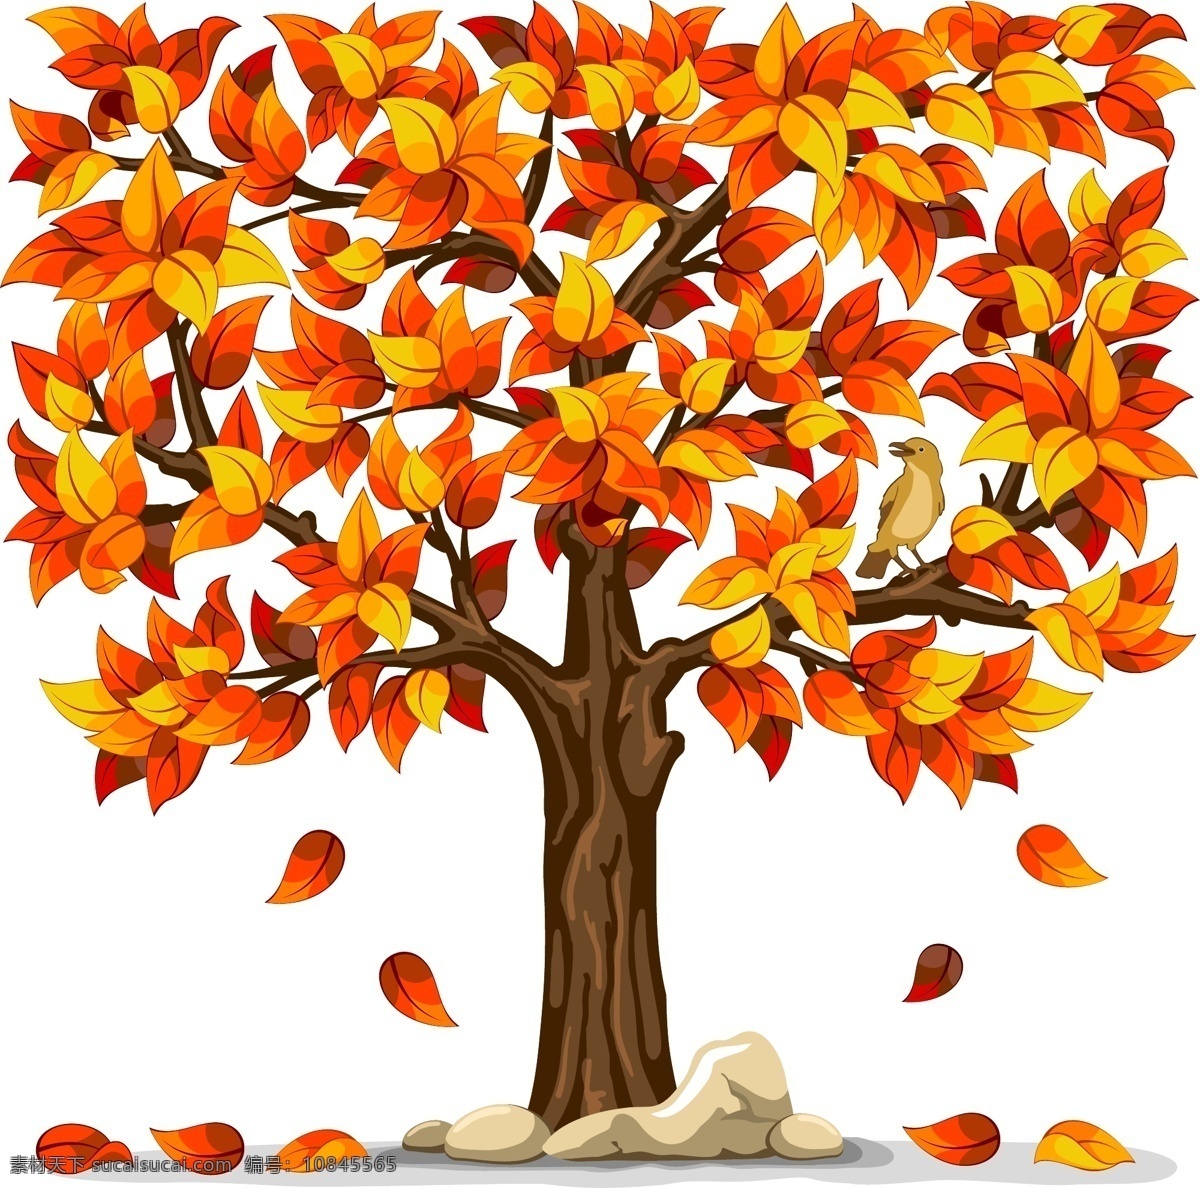 秋天 景色 风景 免费 矢量图 向量 秋季拍卖 秋色秋色秋色 秋色 秋天的向量 美丽 其他矢量图